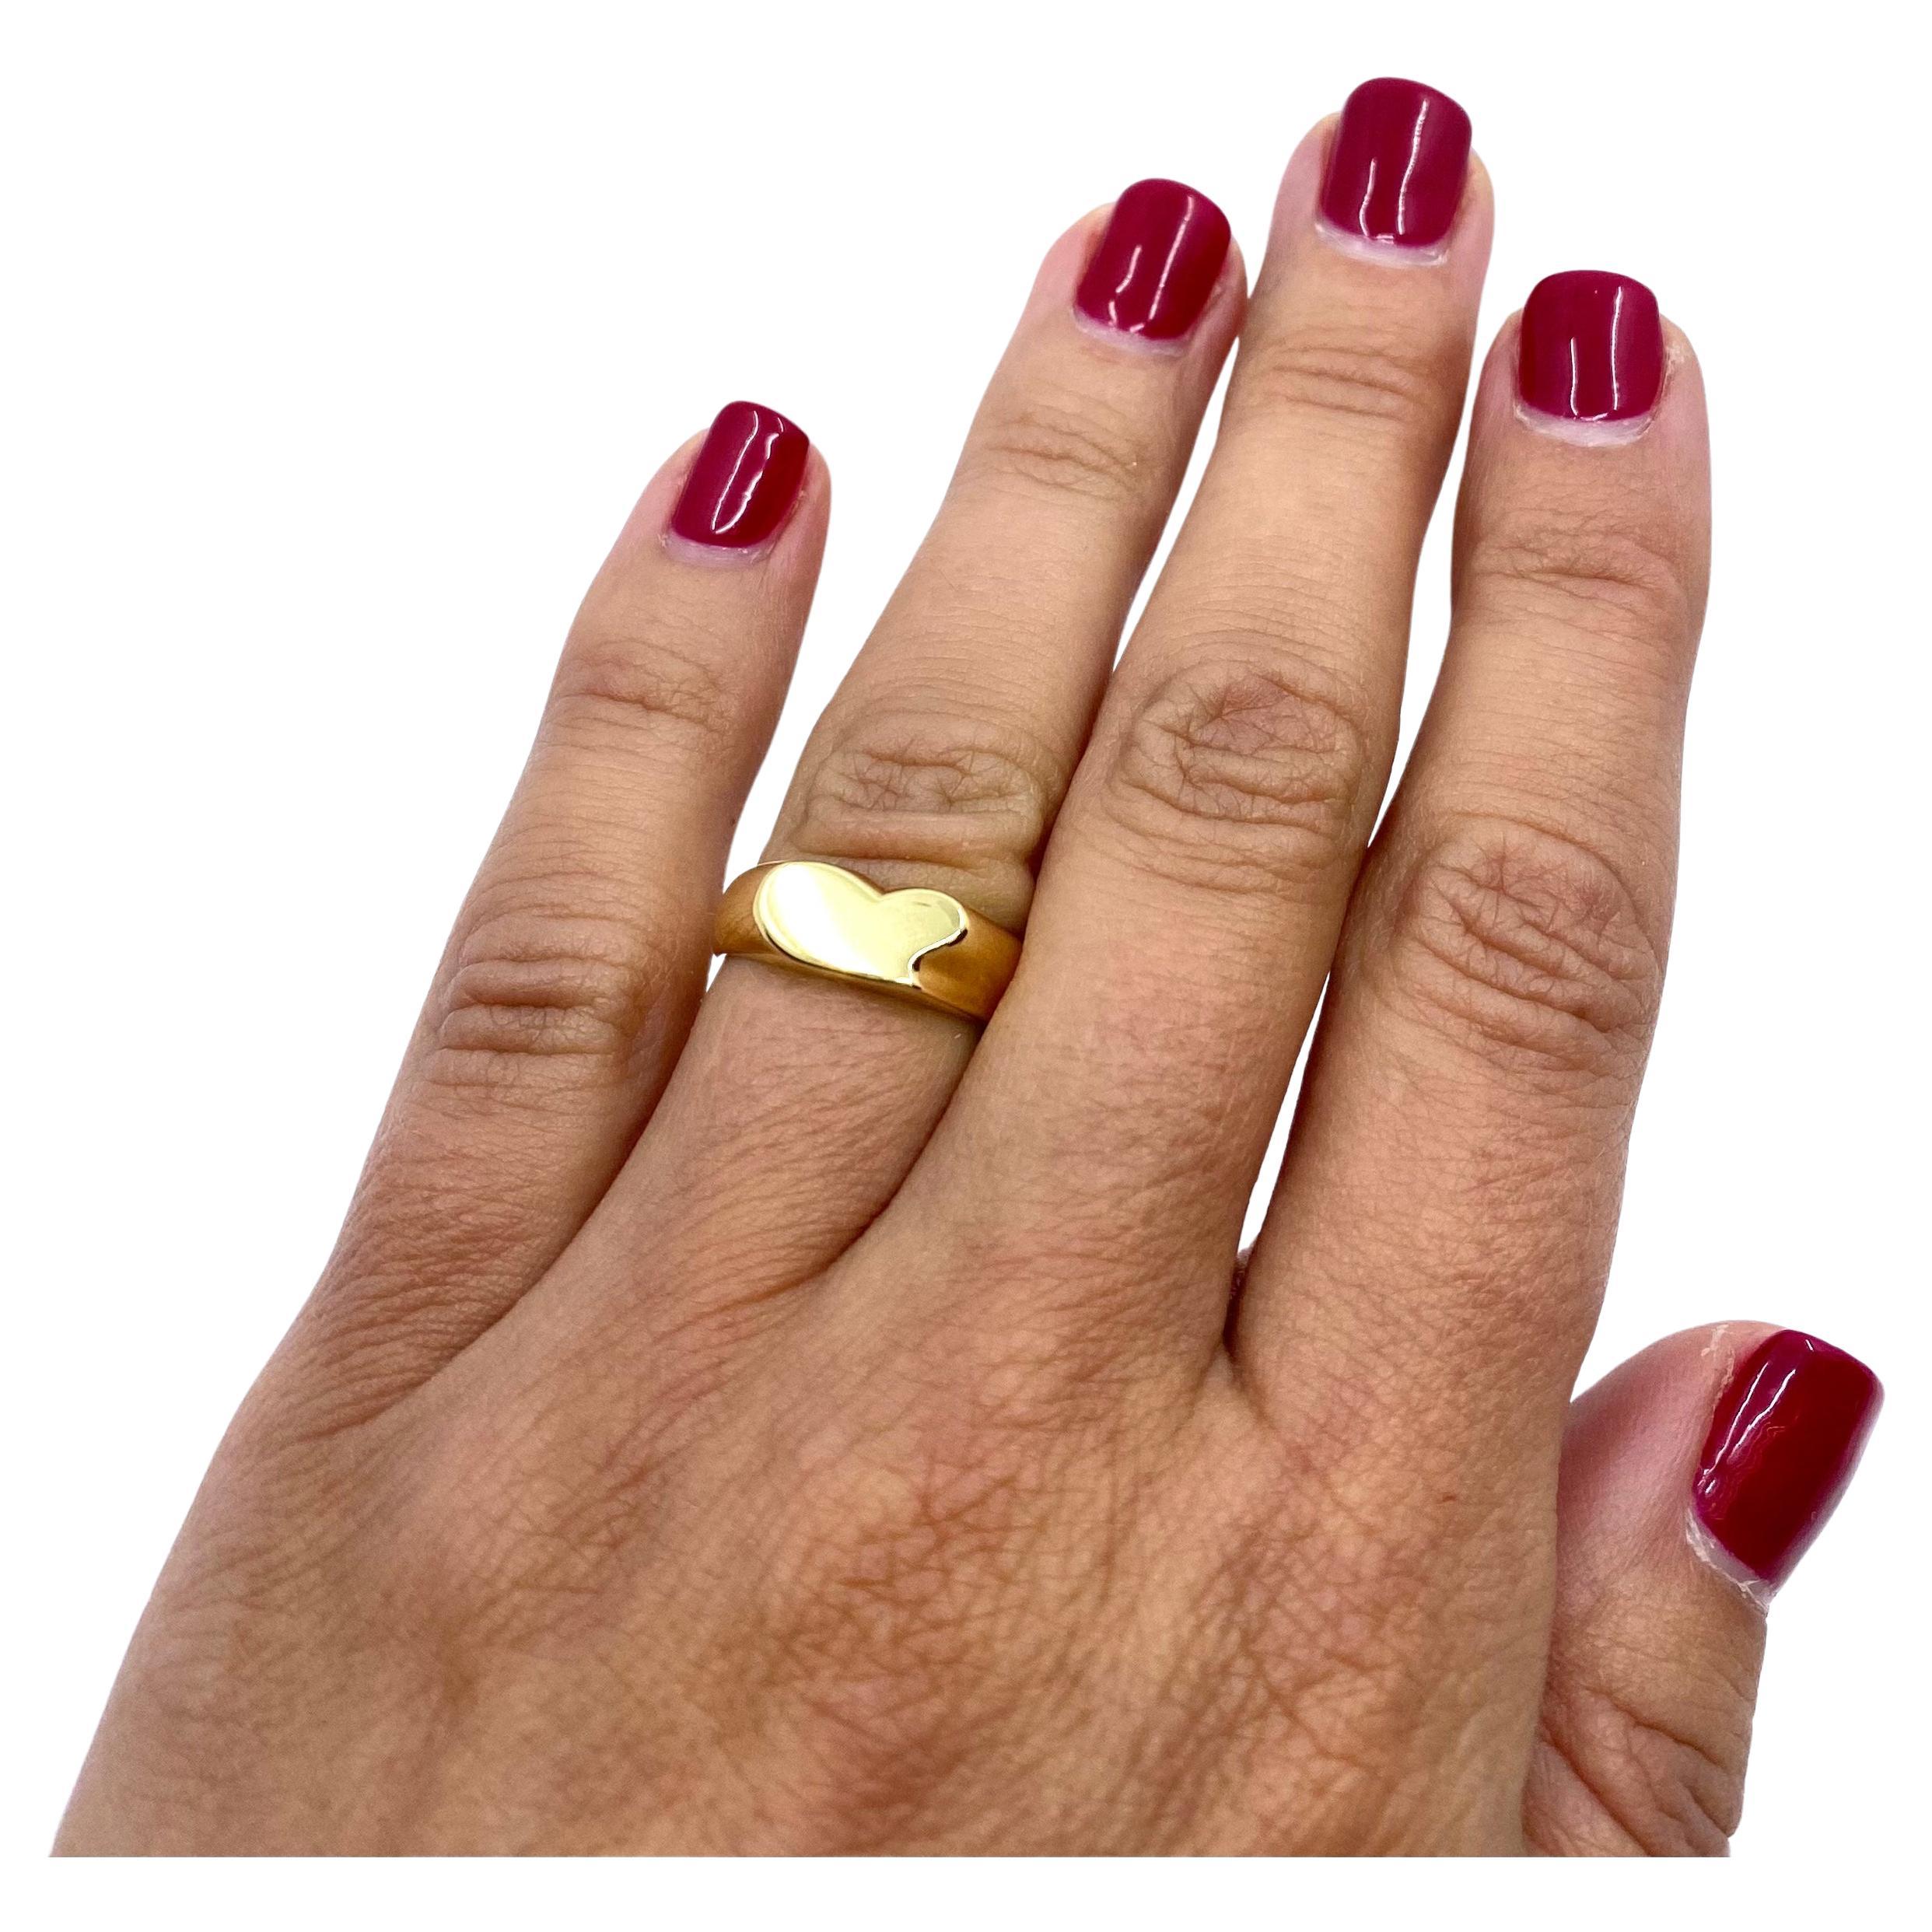 Bague cœur minimaliste en or 18 carats d'Elsa Peretti pour Tiffany & Co. La bague est constituée d'un anneau d'or orné d'un cœur plat stylisé. La douceur de l'or poli et les lignes continues de la bague créent une forme parfaite. Avec toute sa